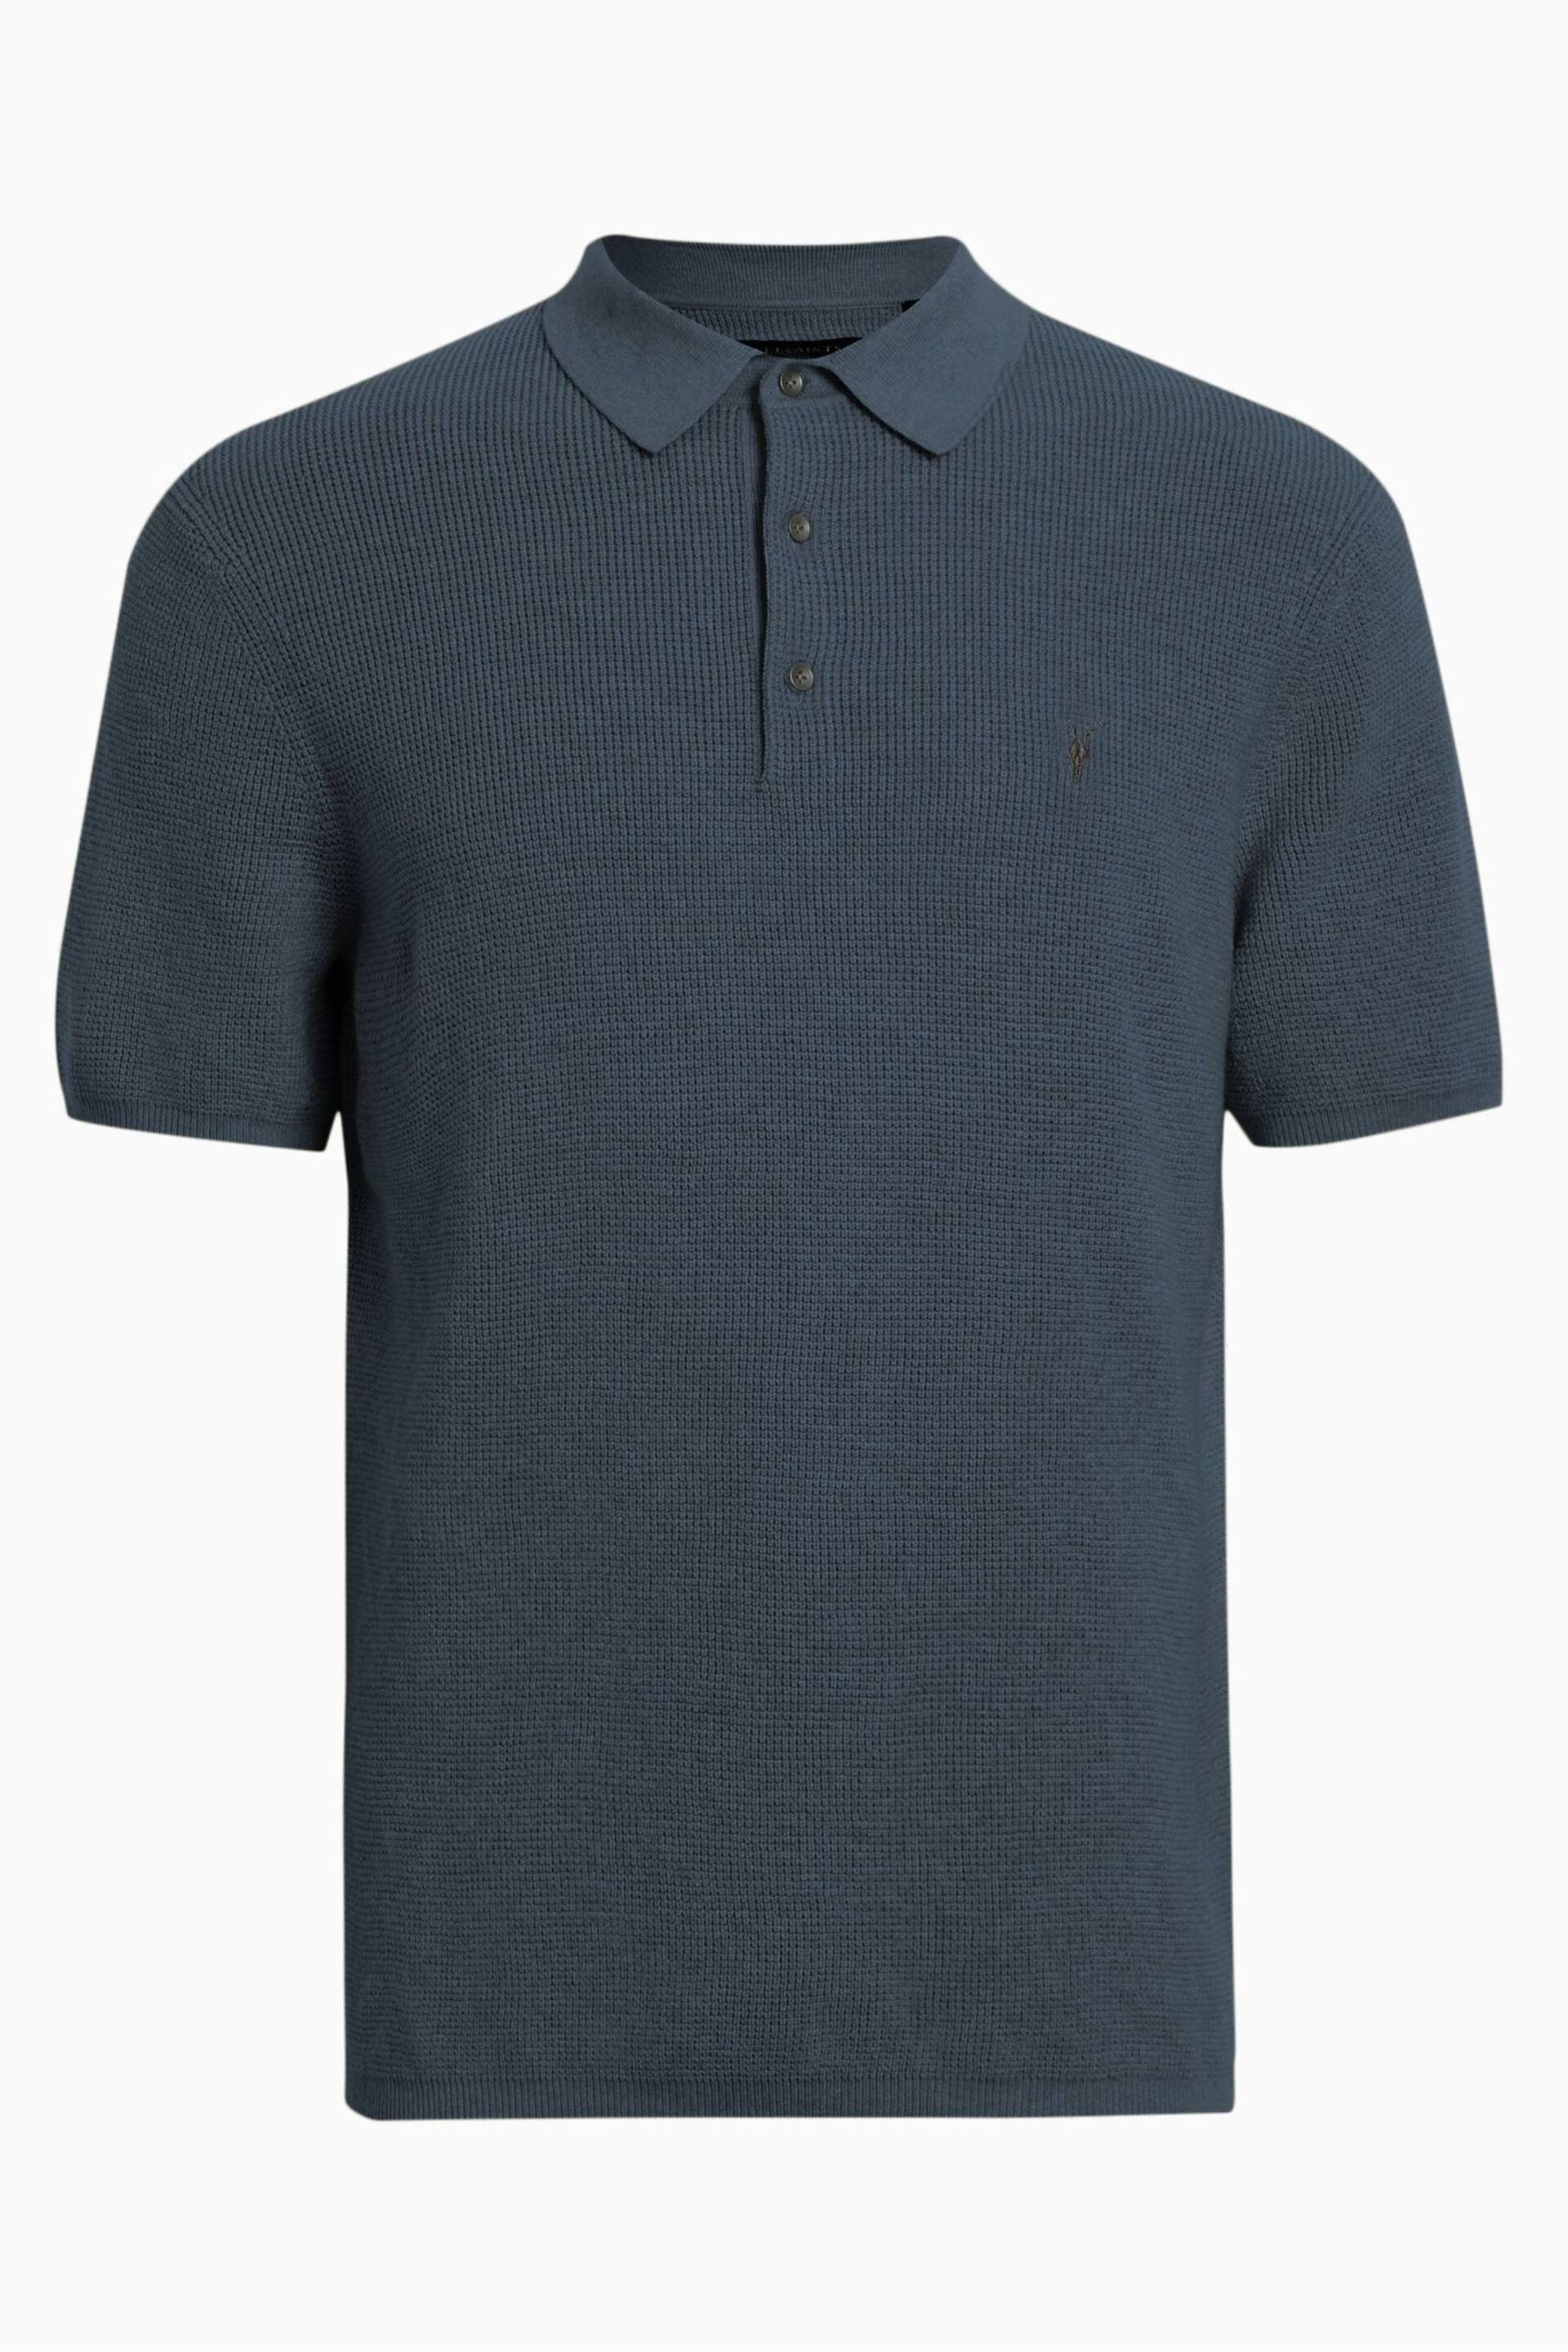 AllSaints Blue Aspen Short Sleeve Polo Shirt - Image 6 of 6